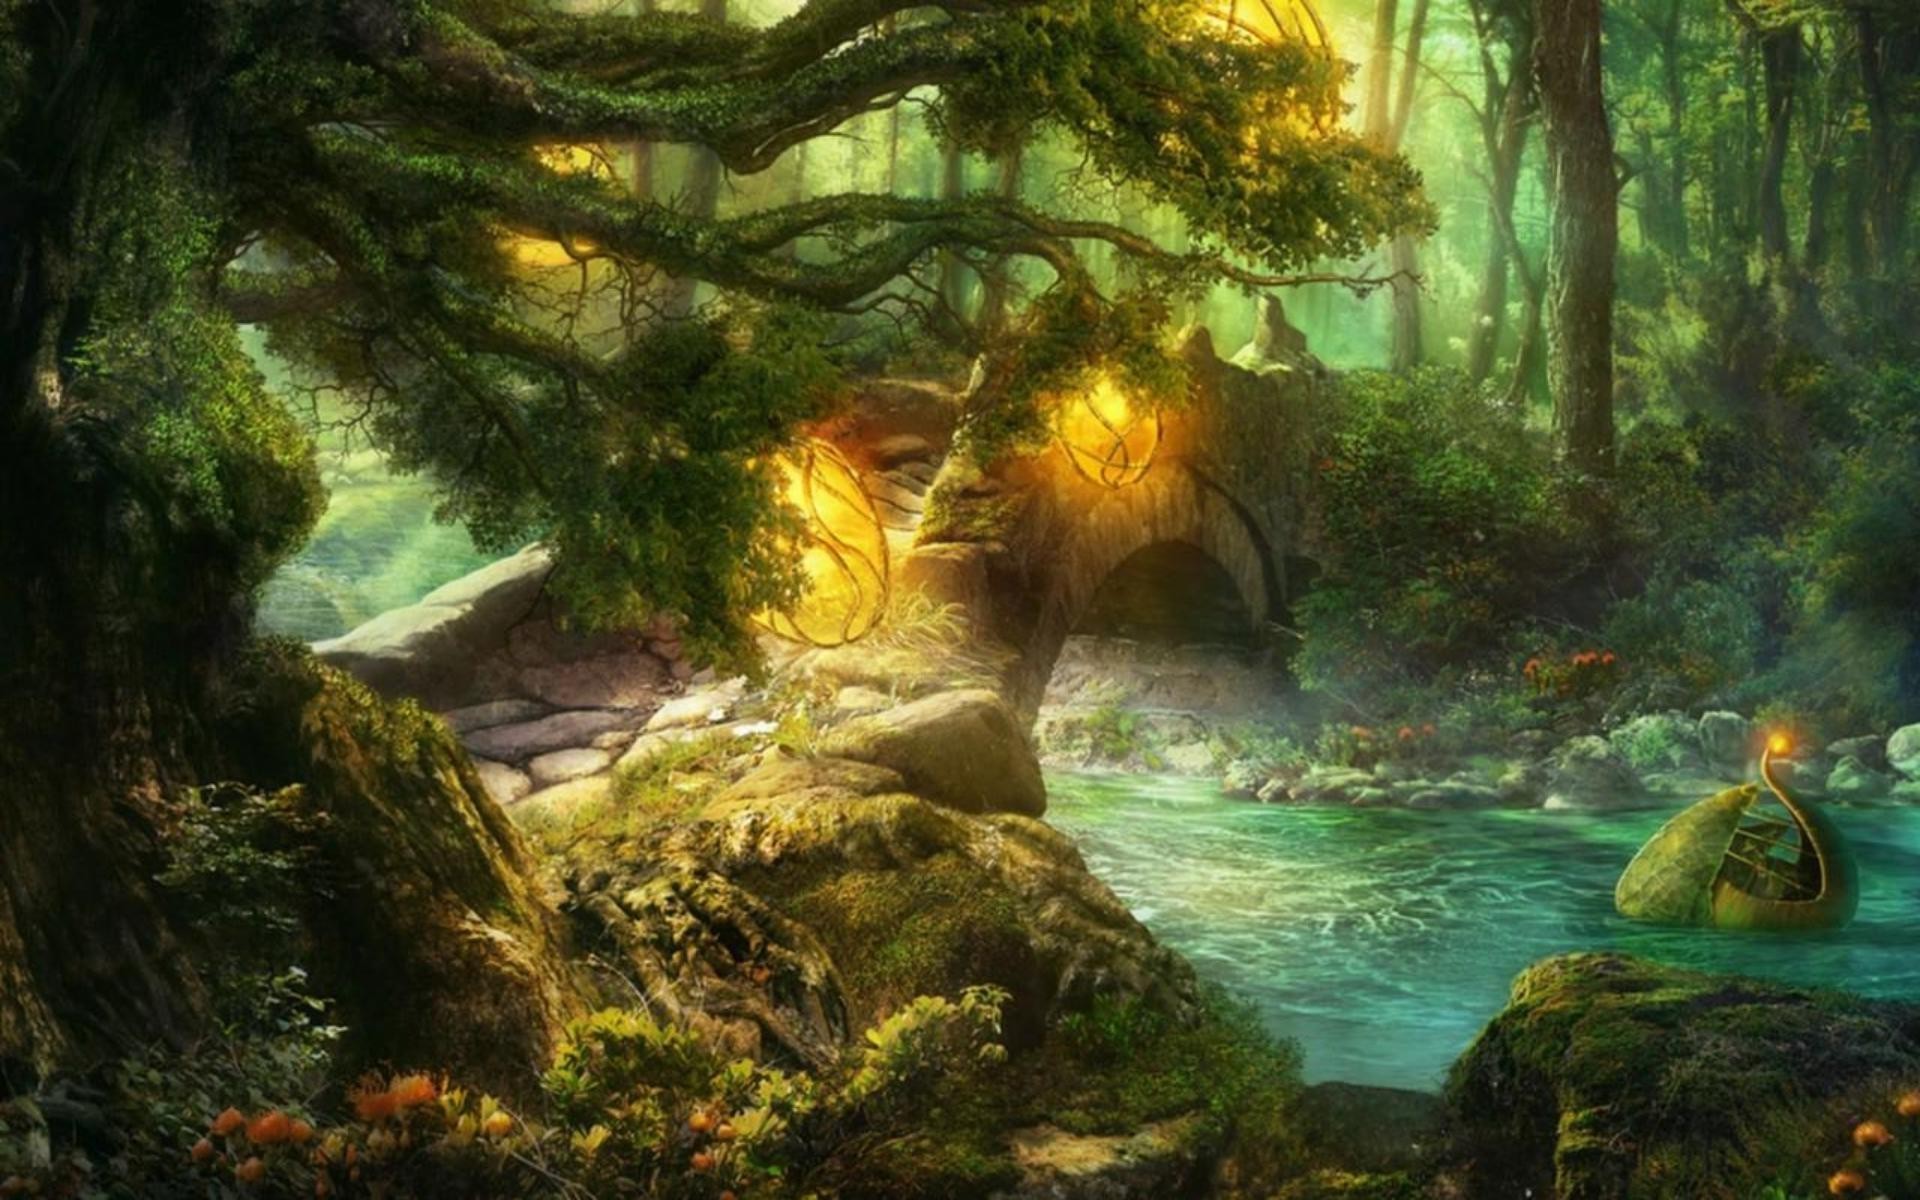 Stone Bridge In Fairytale Forest Wallpaper